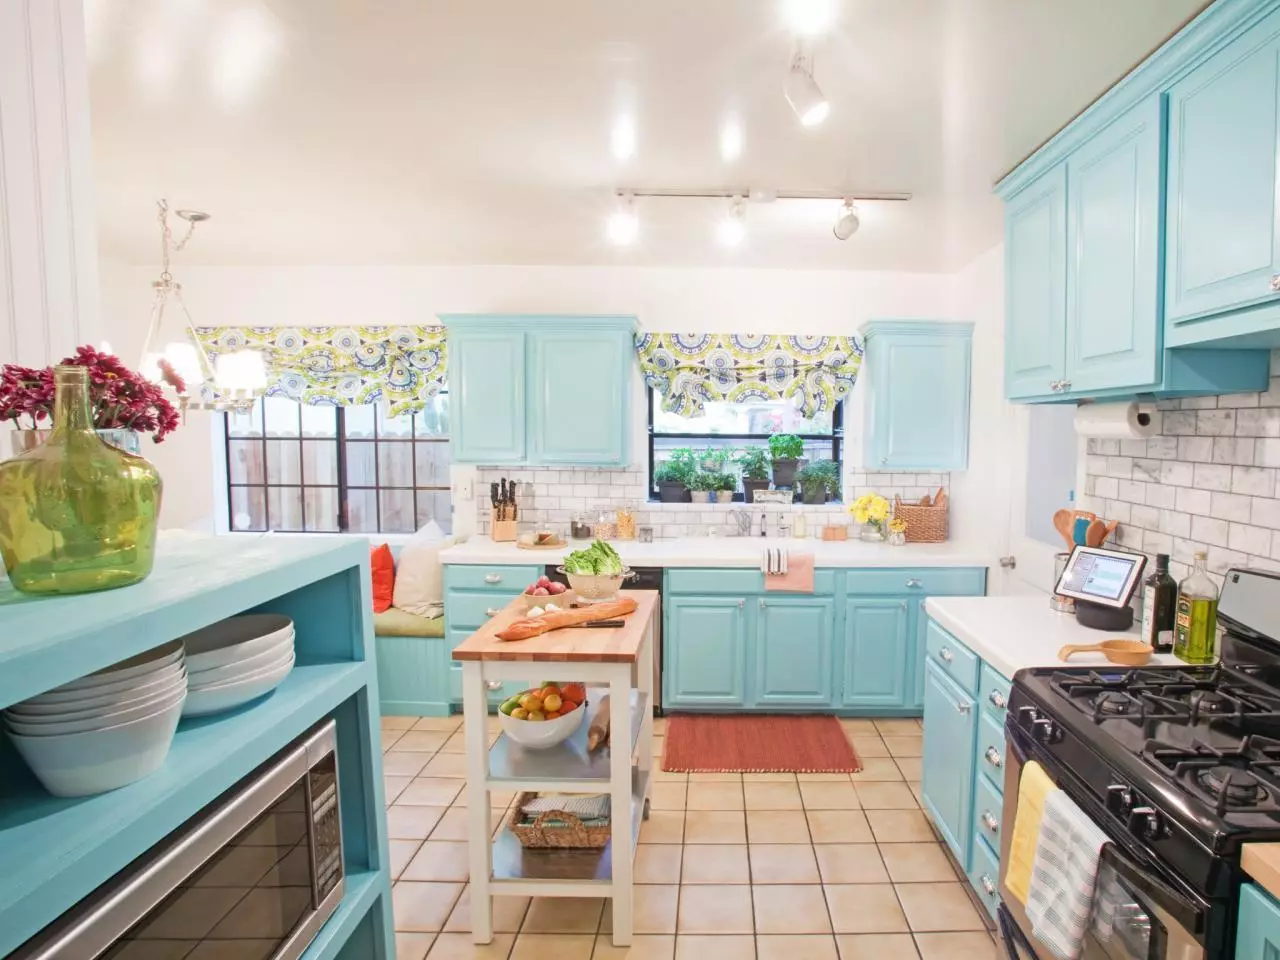 藍廚房（82張照片）：在藍色廚房套裝內部合併哪種顏色？淺藍色和深藍色色調的廚房設計 9555_33